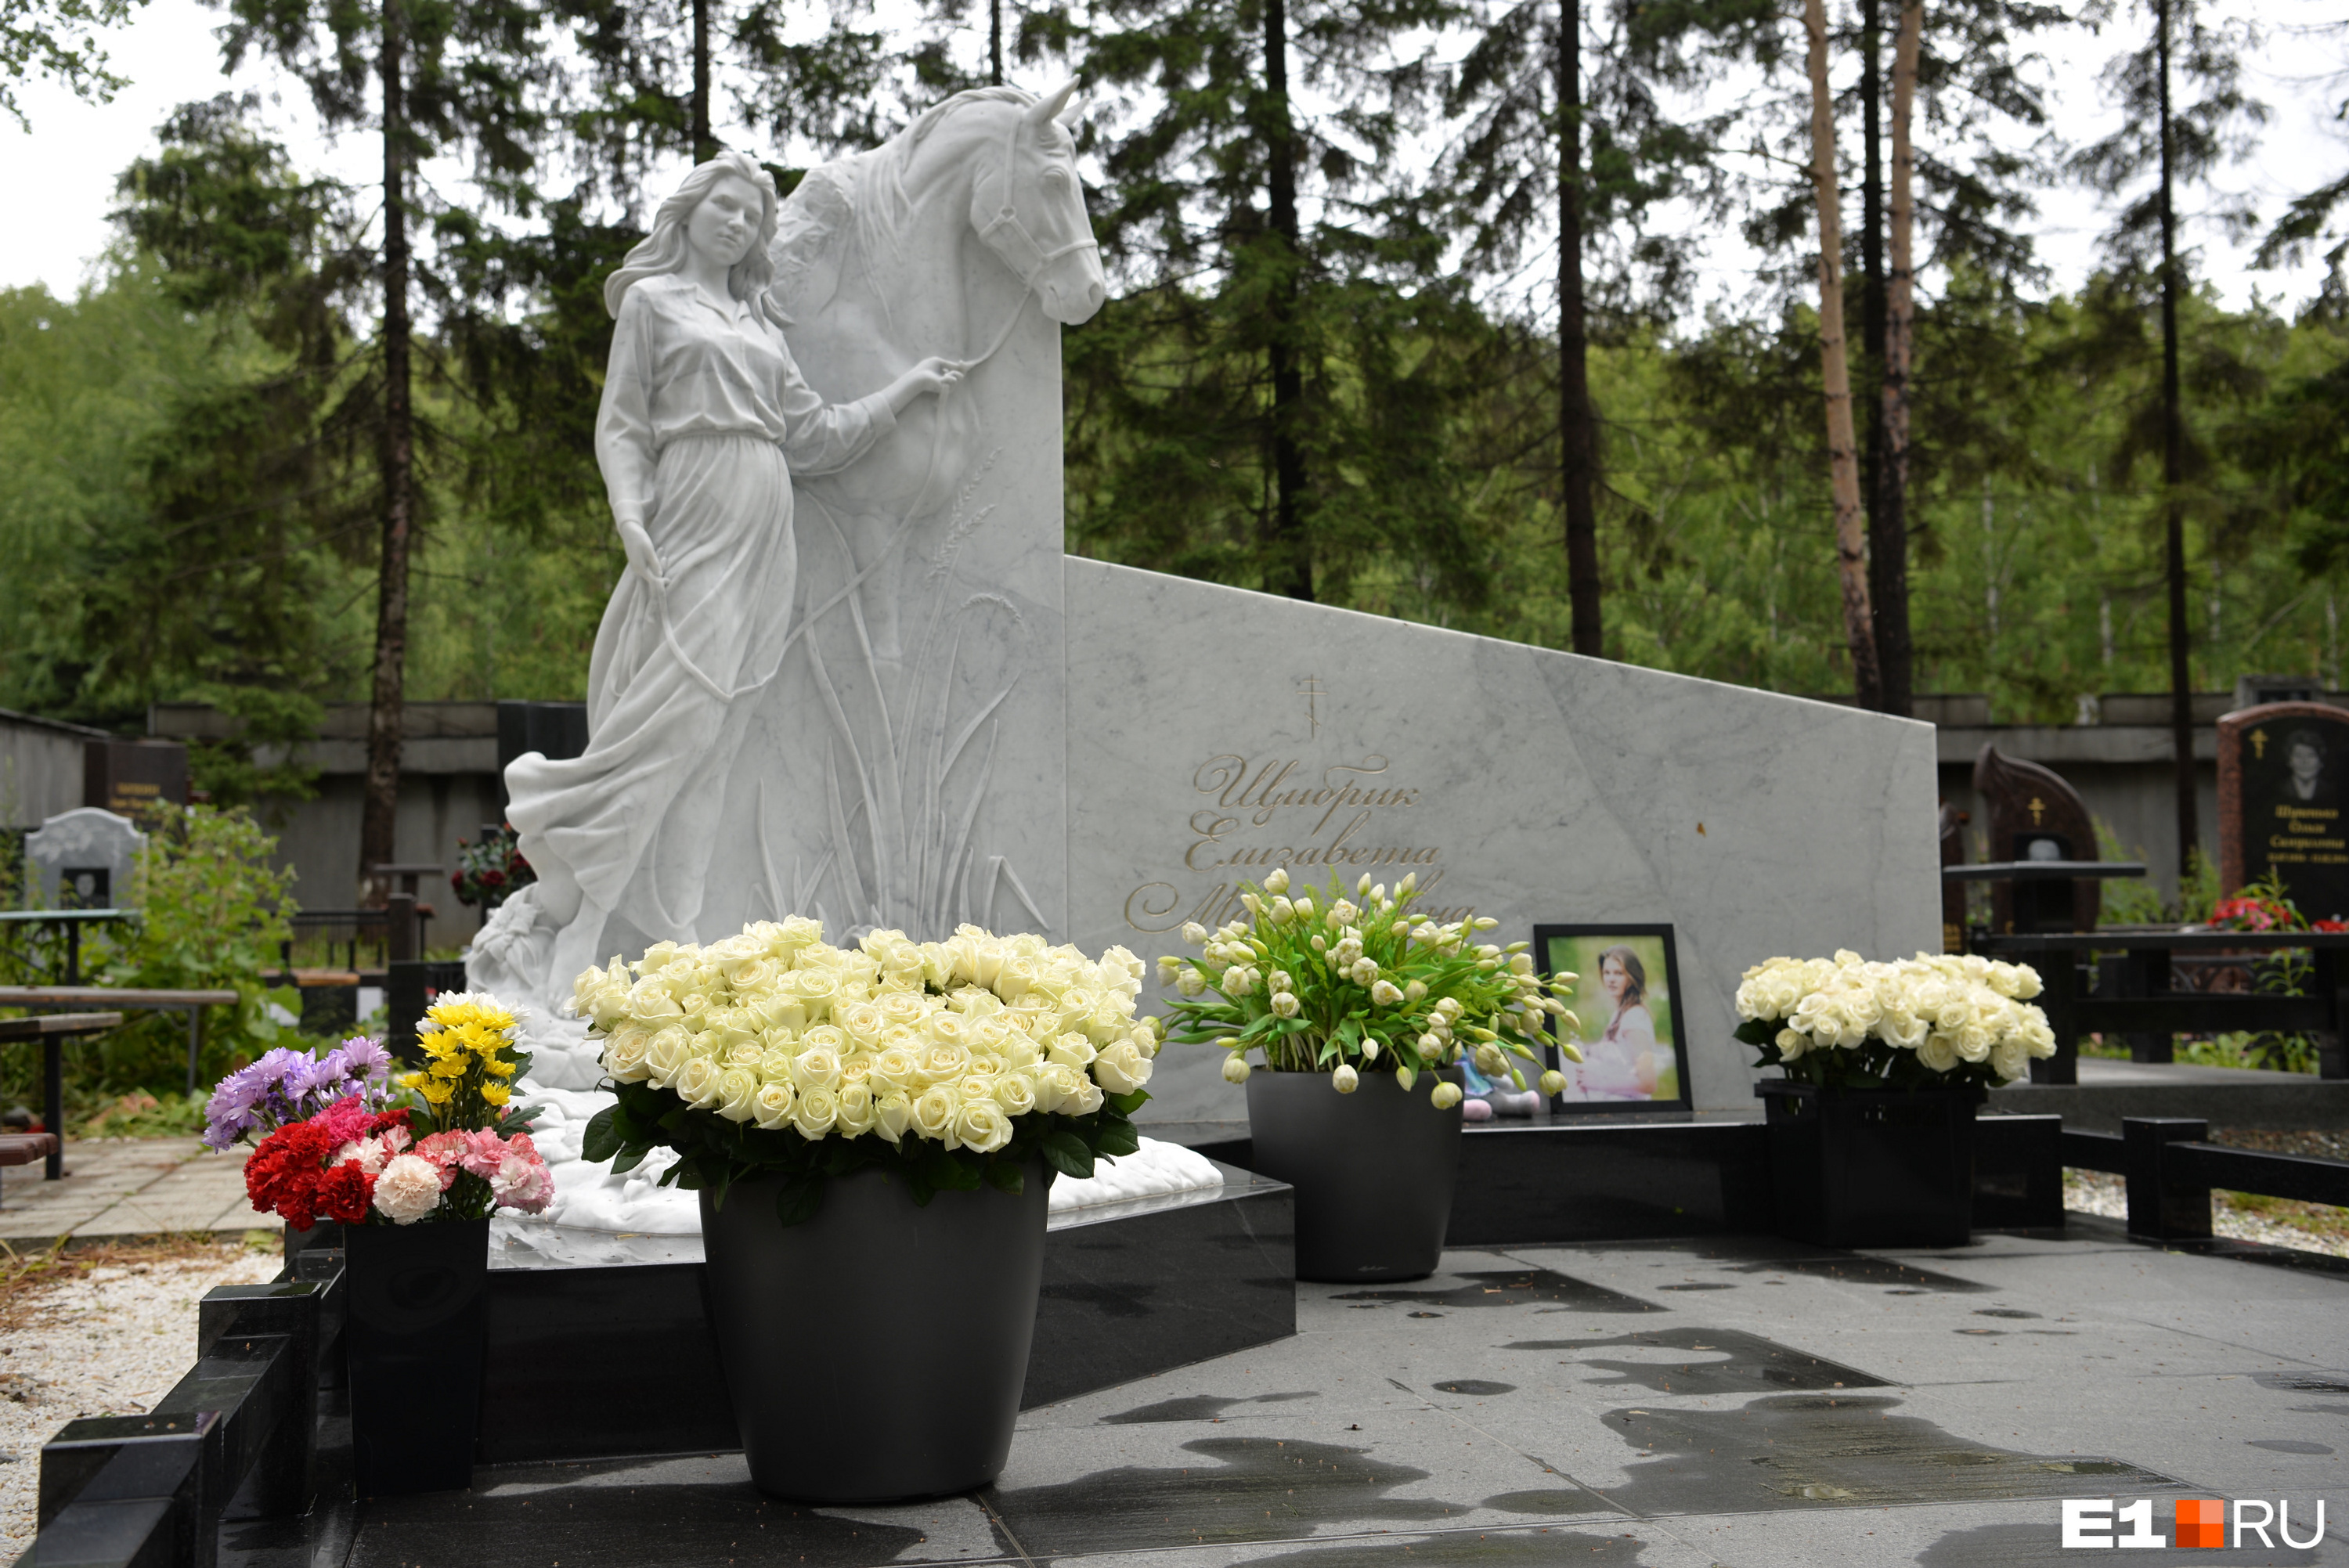 Диана Лебедева памятник на могиле